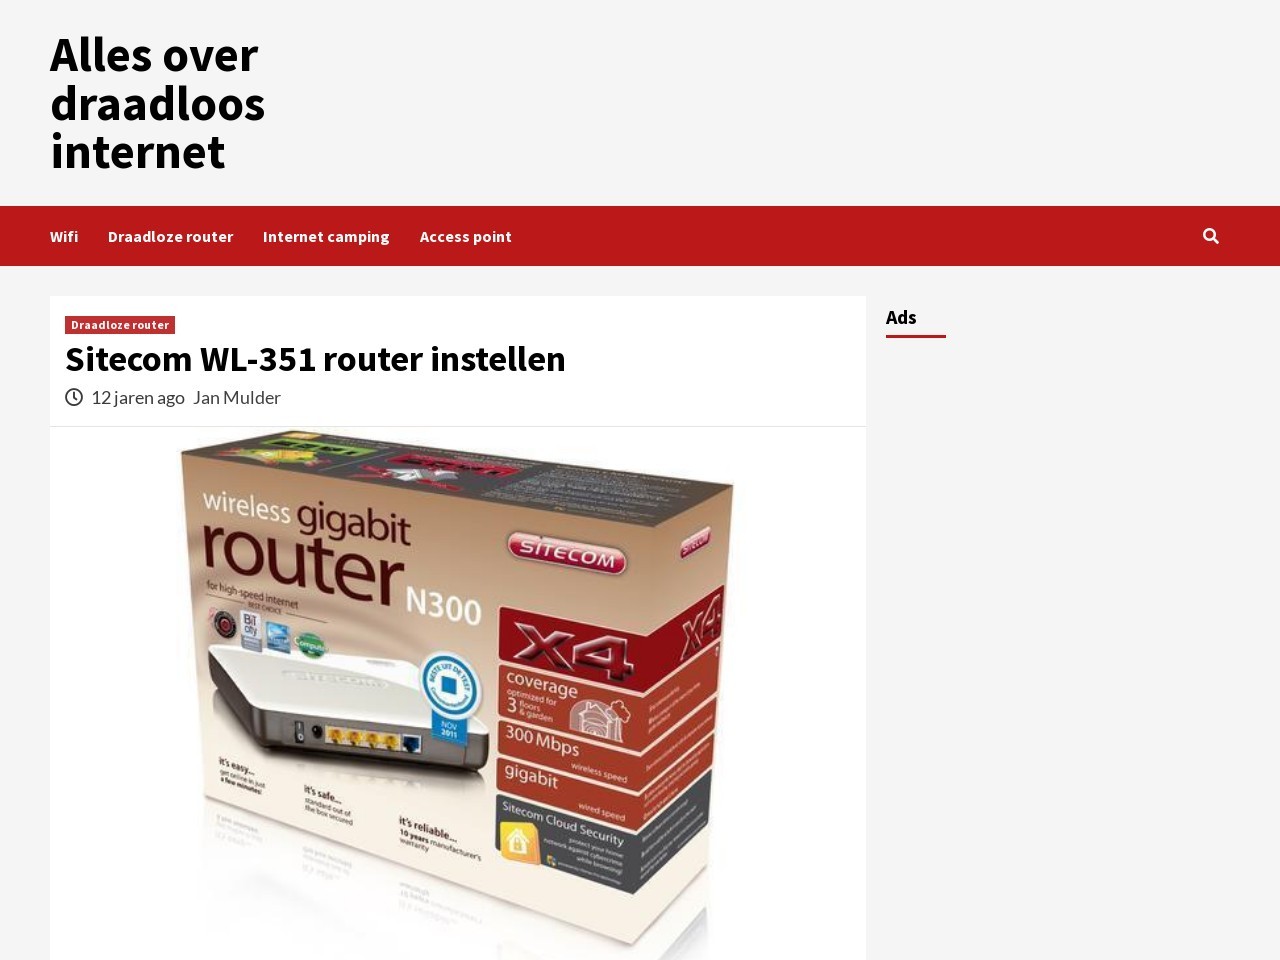 Sitecom WL-351 router instellen - Alles over draadloos internet